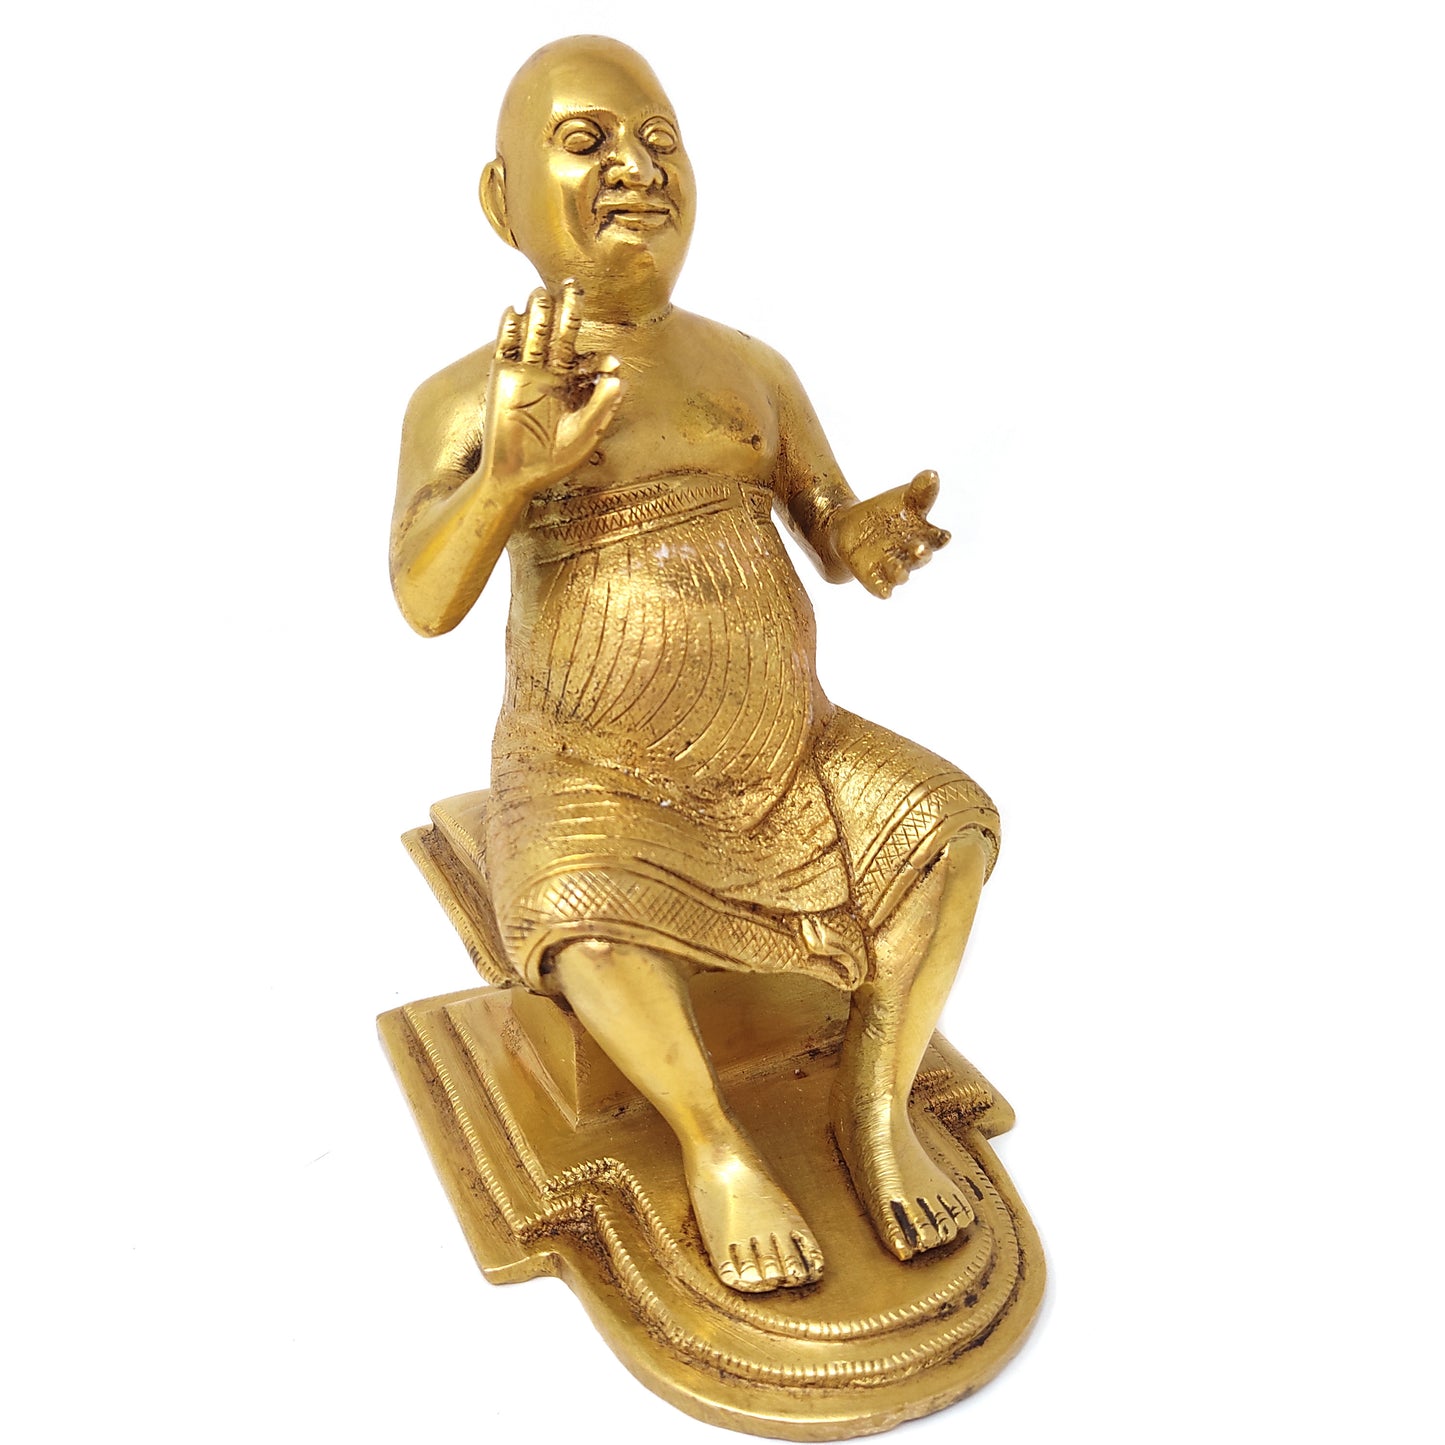 Shivananda Swami India Guru Holy Saint Sivananda Brass Handcrafted Statue 5.25"